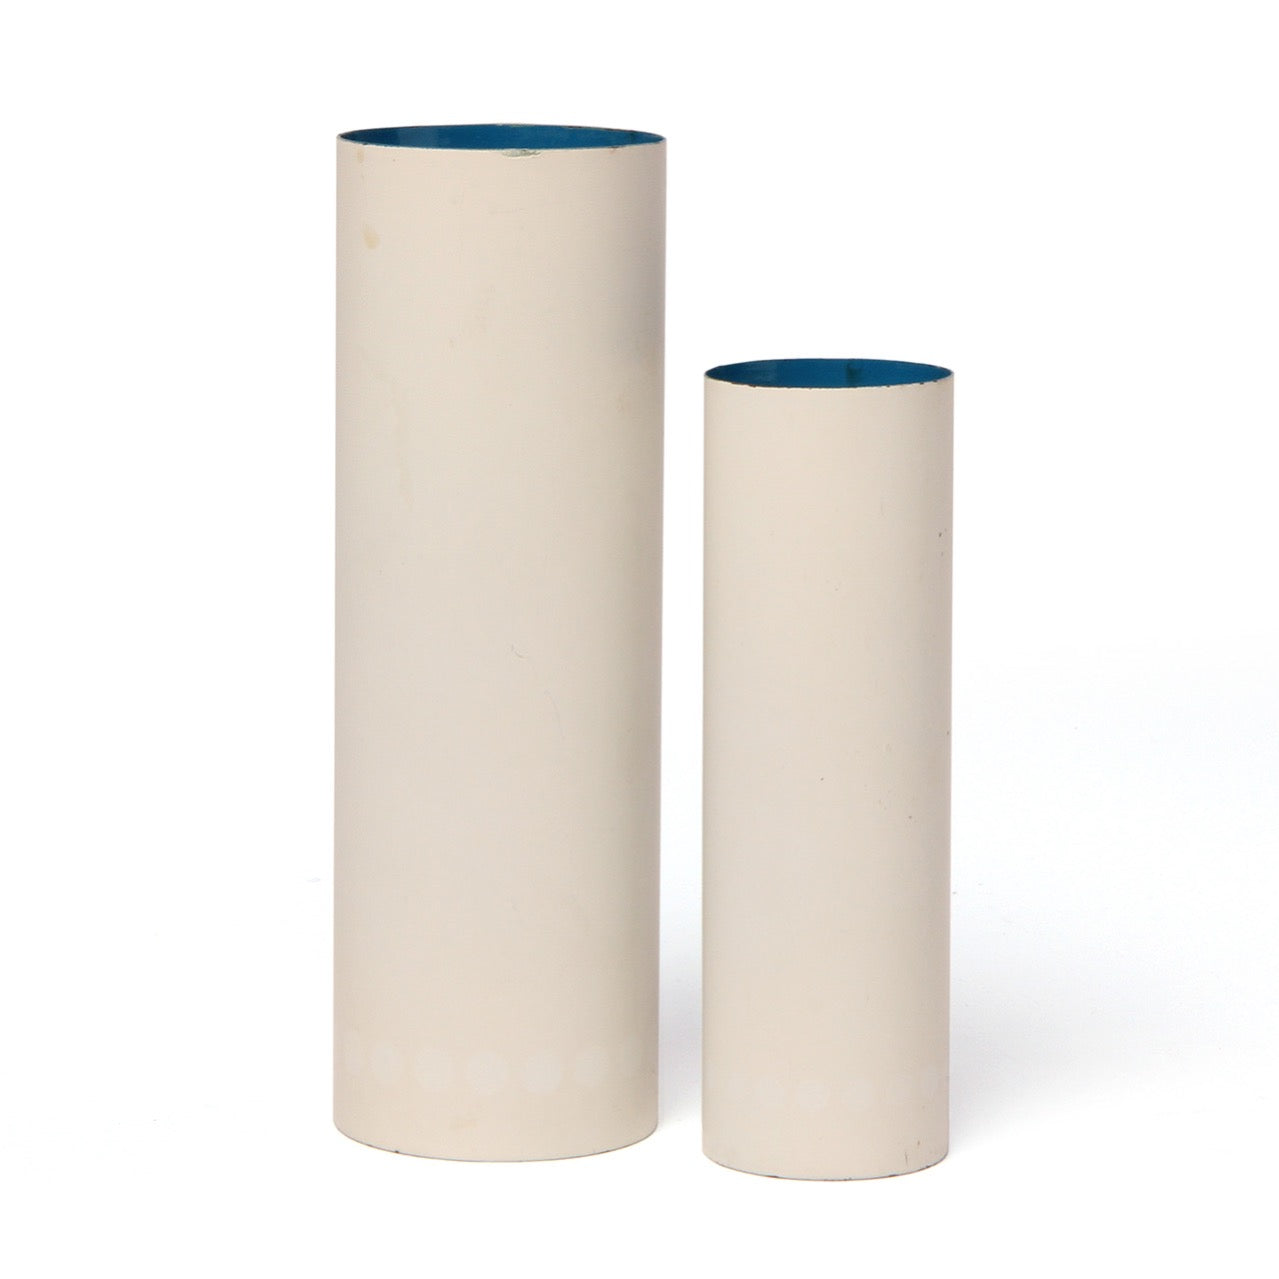 Enameled Steel Vases from Denmark